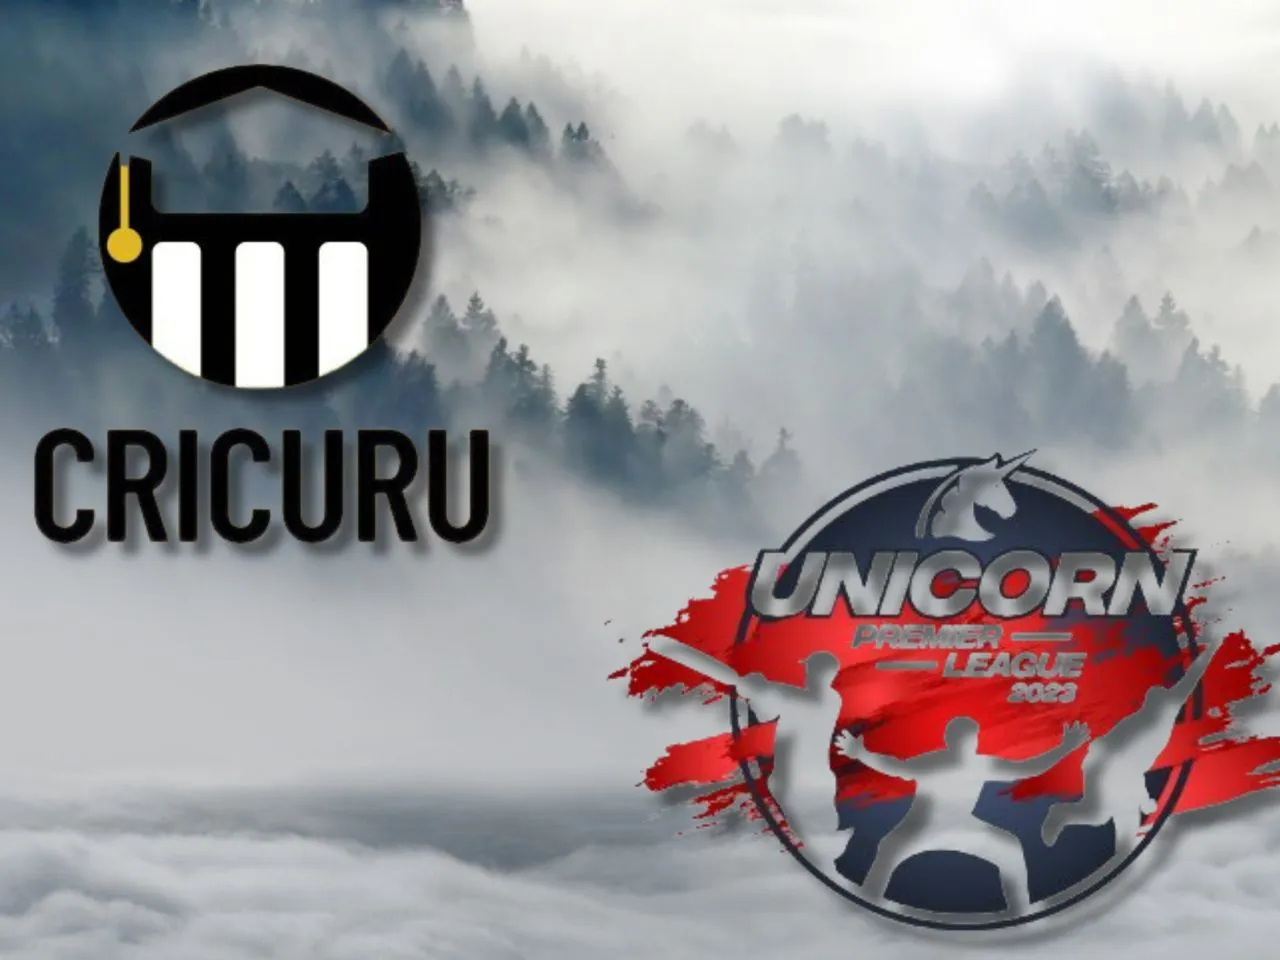 Cricket Edtech Startup Cricuru Partners With Unicorn Premier League